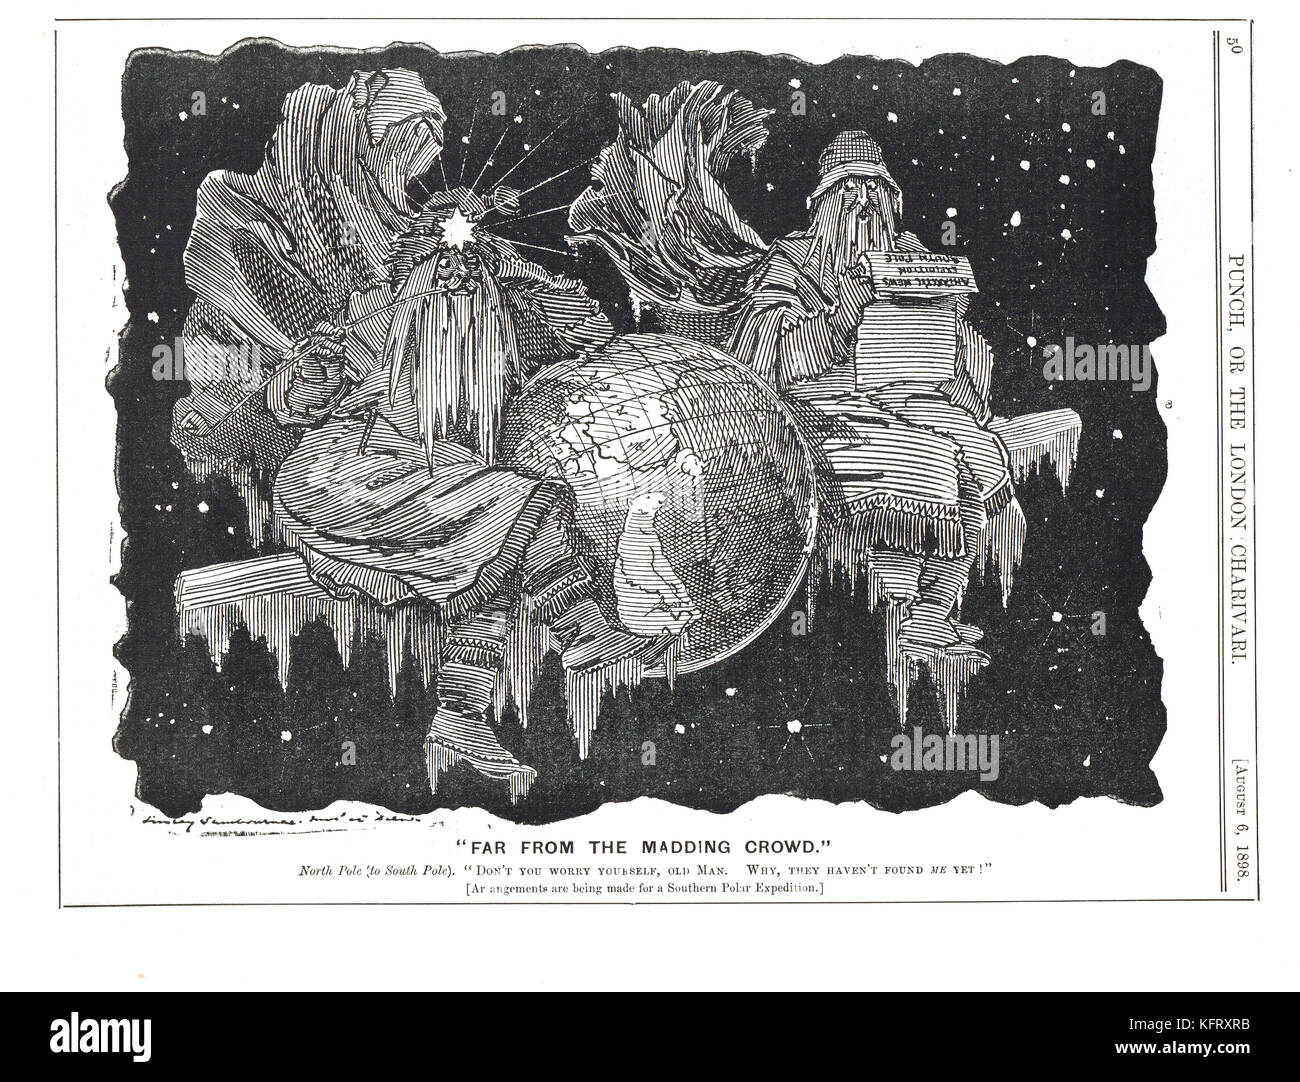 Southern Cross Expedition, Punch-Cartoon 1898, der Nordpol sagt dem Südpol, er solle sich keine Sorgen machen, da sie ihn noch nicht gefunden hätten. Stockfoto